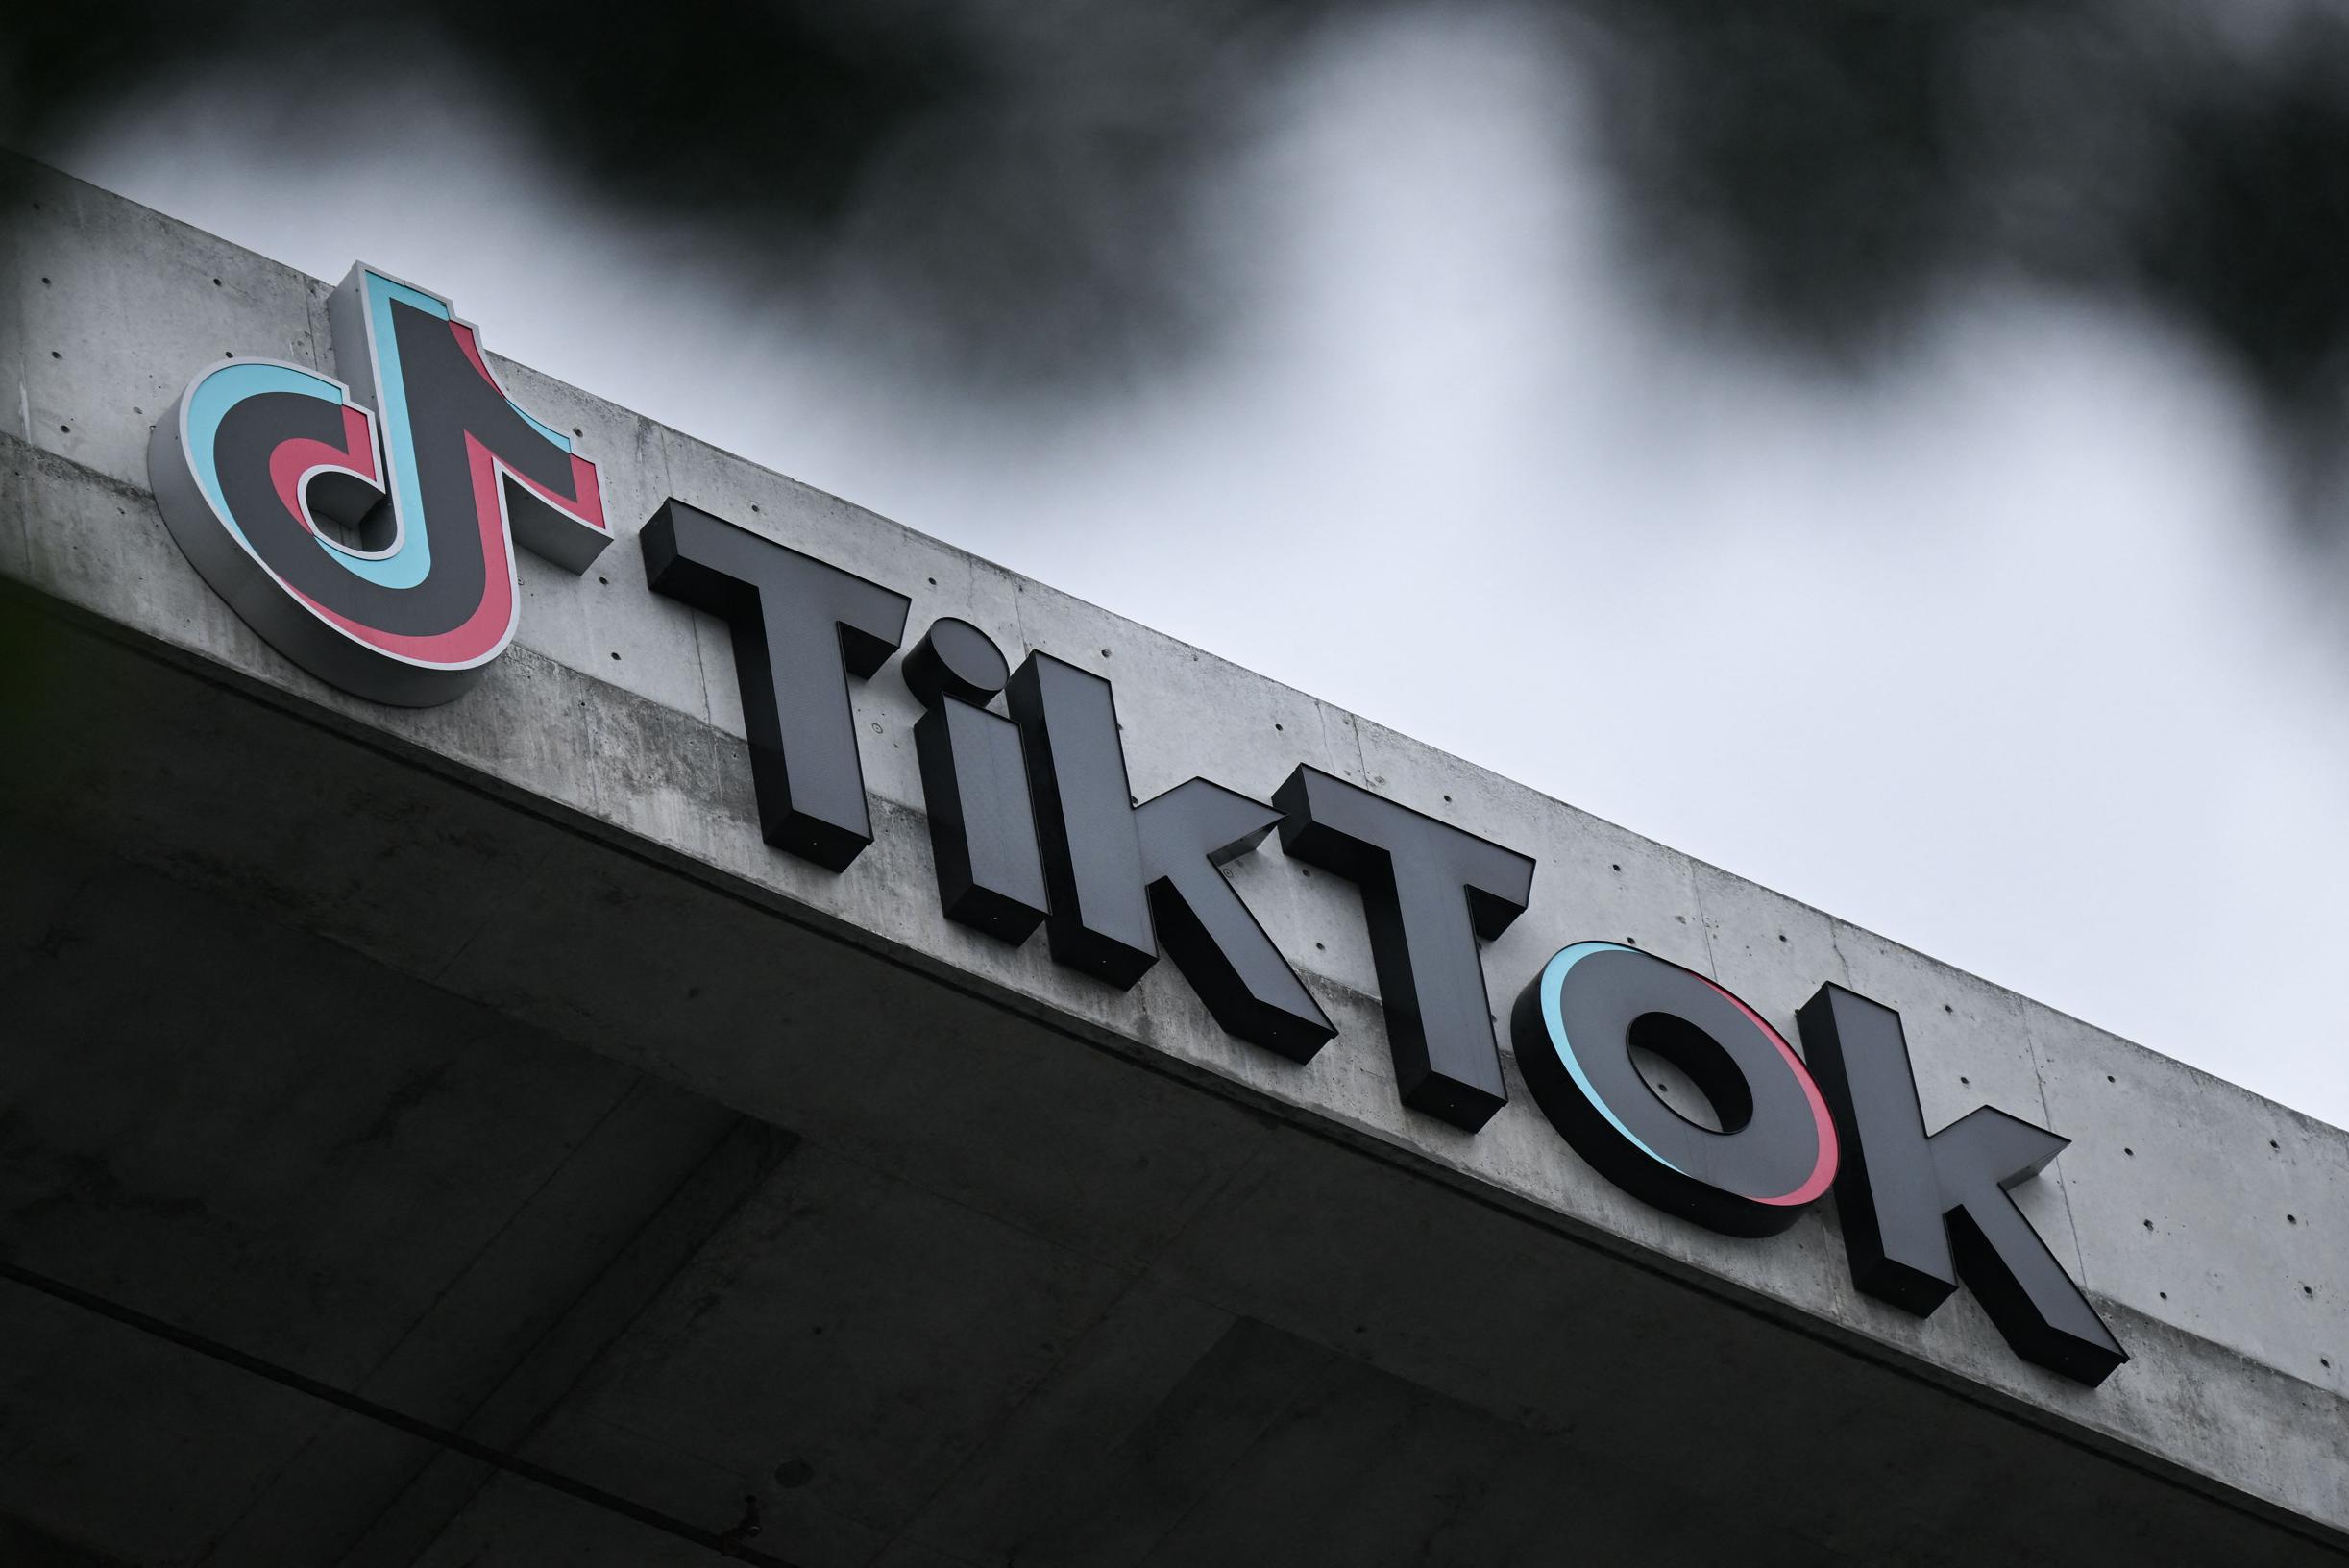 İtalya, küçüklerin yeterince korunmaması nedeniyle Tiktok’a 10 milyon euro para cezası verdi